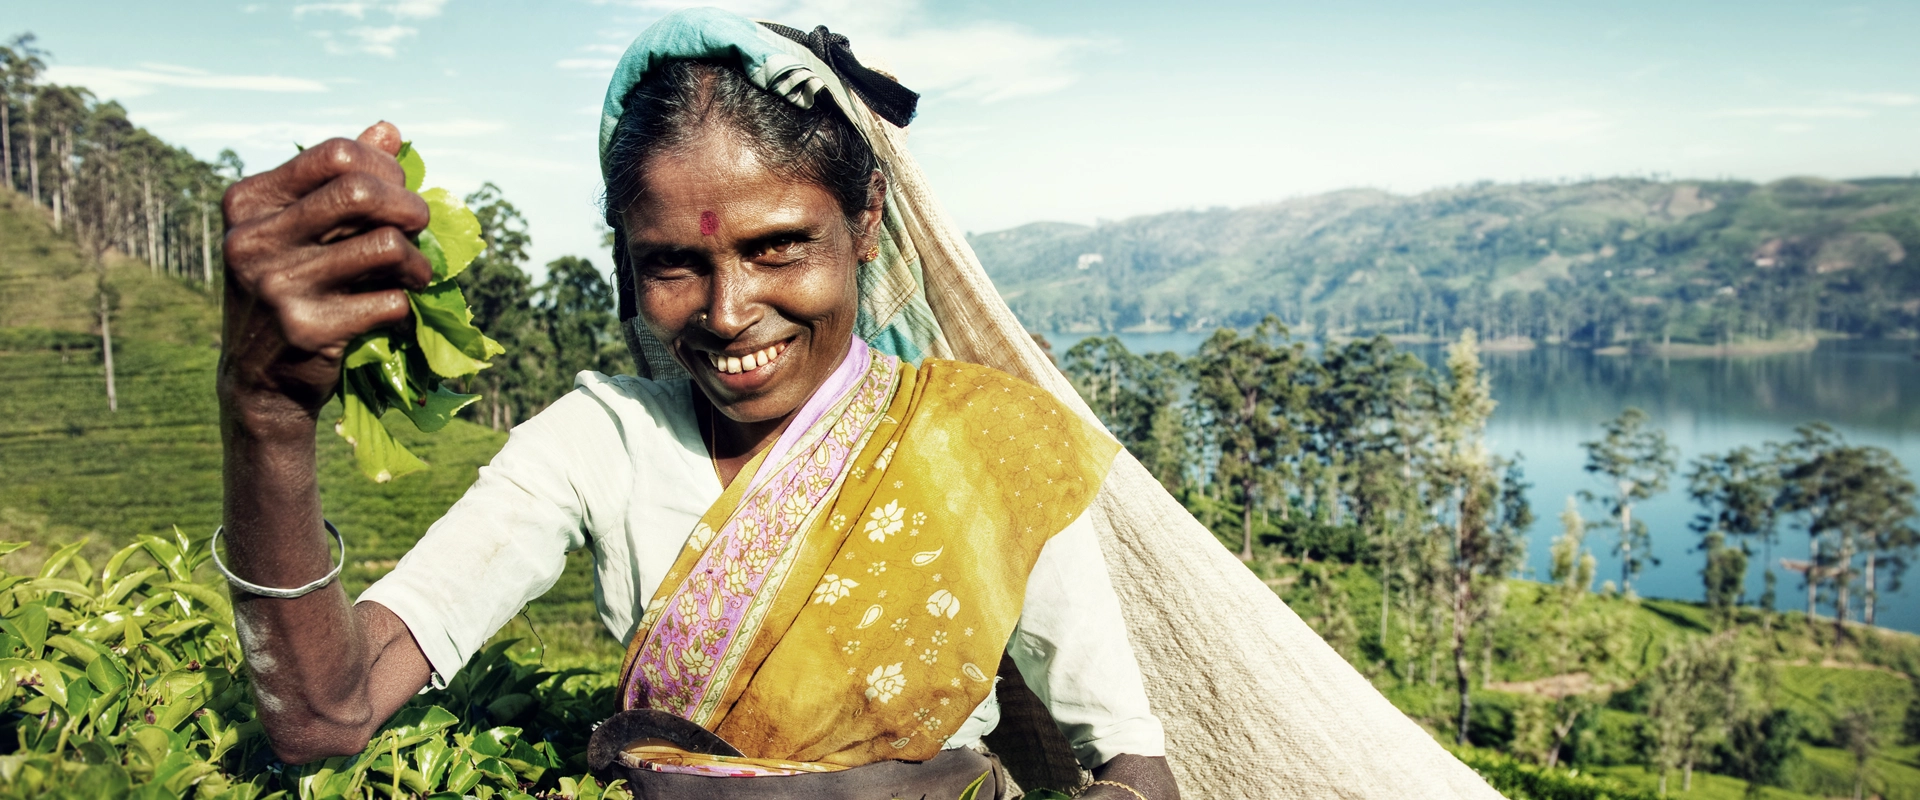 Sri Lanka en moto plantation thé